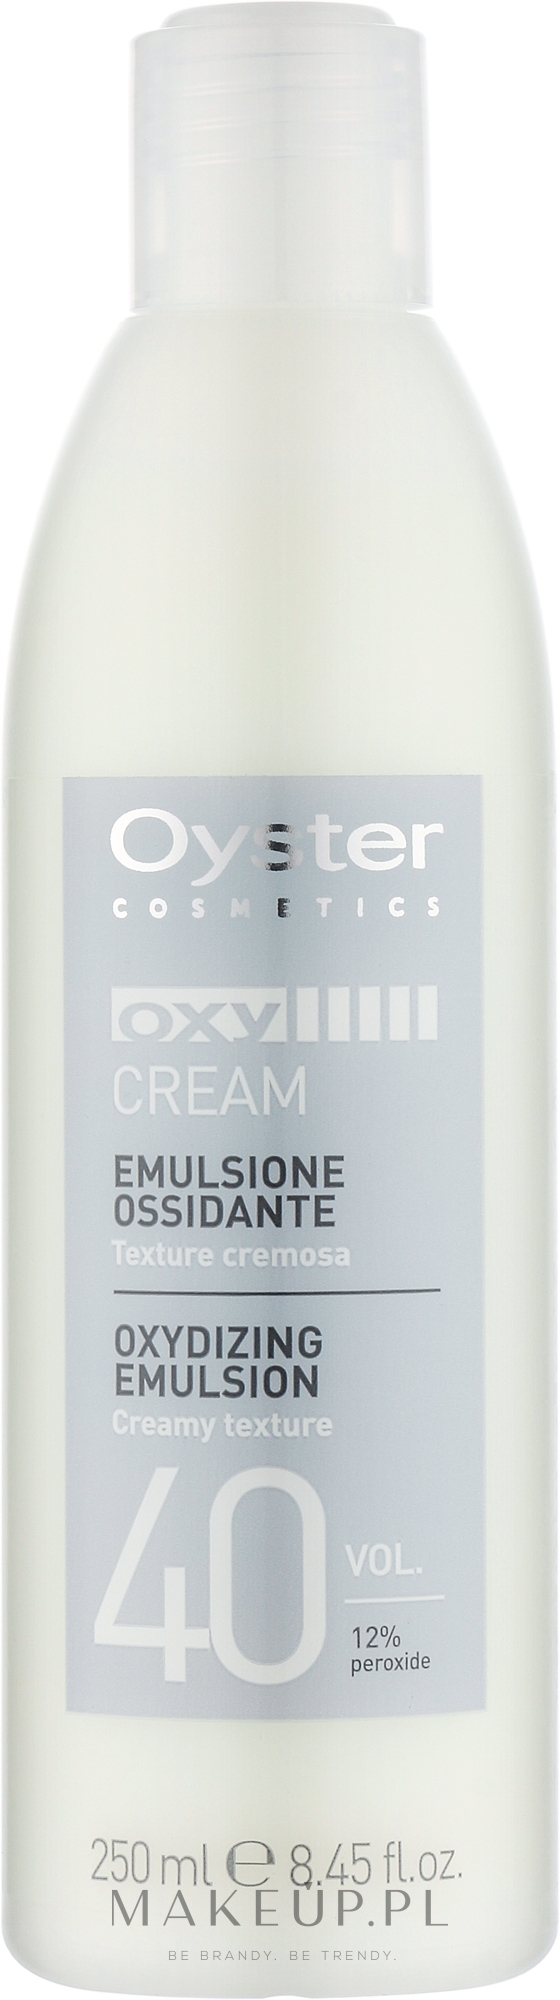 Utleniacz 40 vol. 12% - Oyster Cosmetics Oxy Cream Oxydant — Zdjęcie 250 ml